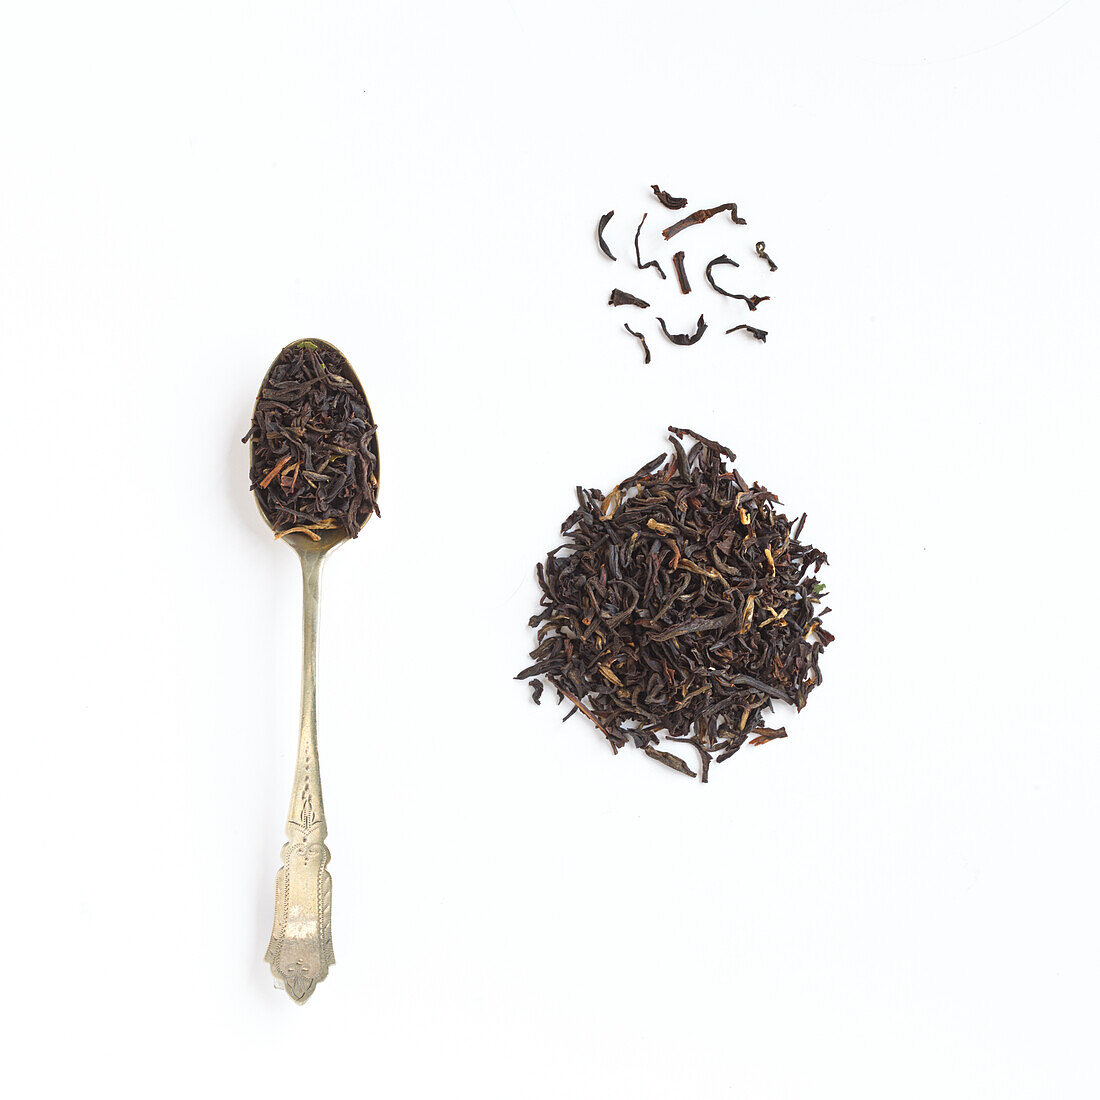 Tregothnan tea from Cornwall, England